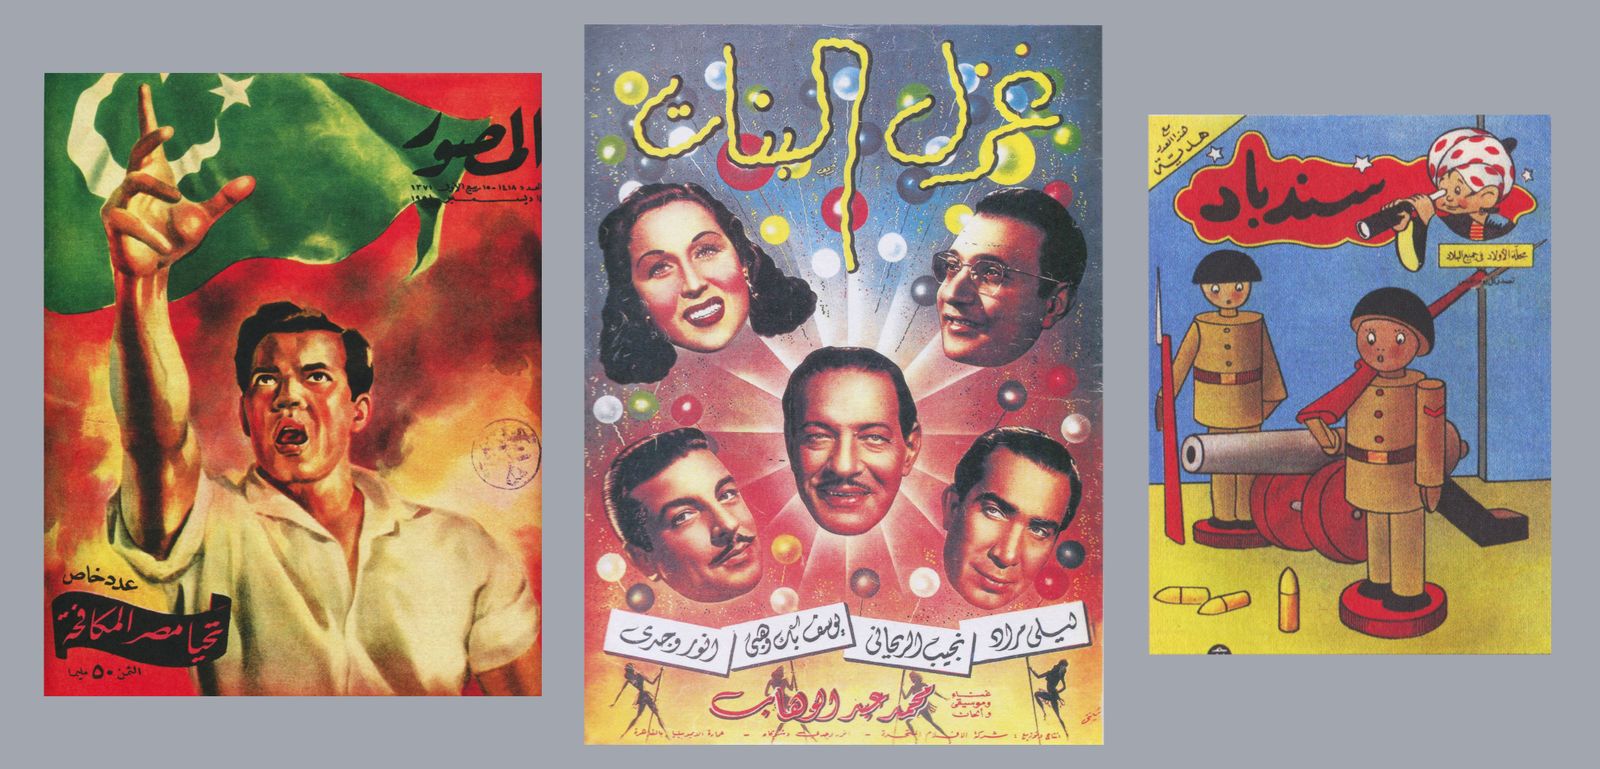 غلاف لمجلة المصور 1956. وغلاف لكتاب "غزل البنات" 1949. وغلاف مجلة أطفال عن الـ "سندباد. (From left to right) Al-Musawwar cover, 1956; Ghazal al-banat press book cover, 1949; Sindibad children’s magazine, designed by Hussein Bicar, year unknown